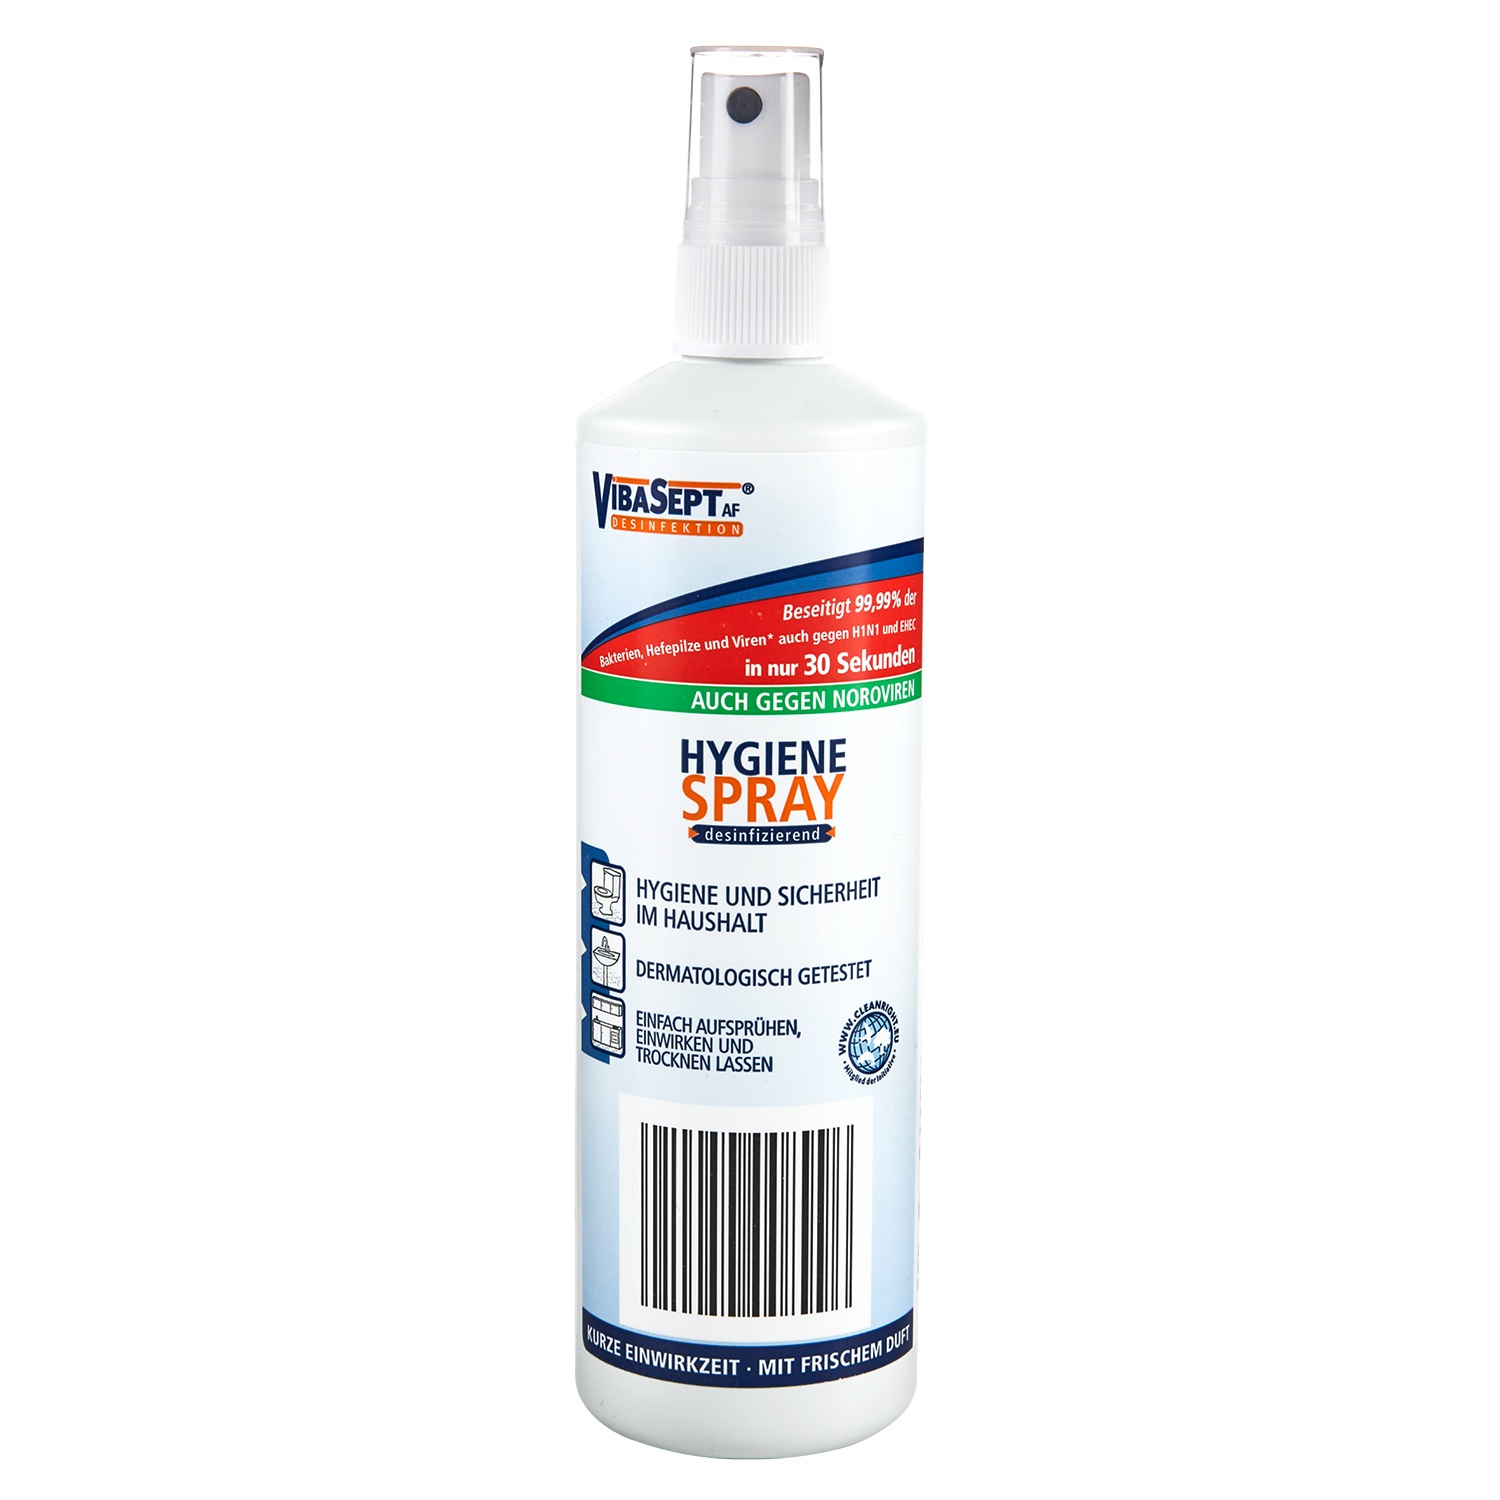 VIBASEPT® AF Hygiene-Spray 250 ml